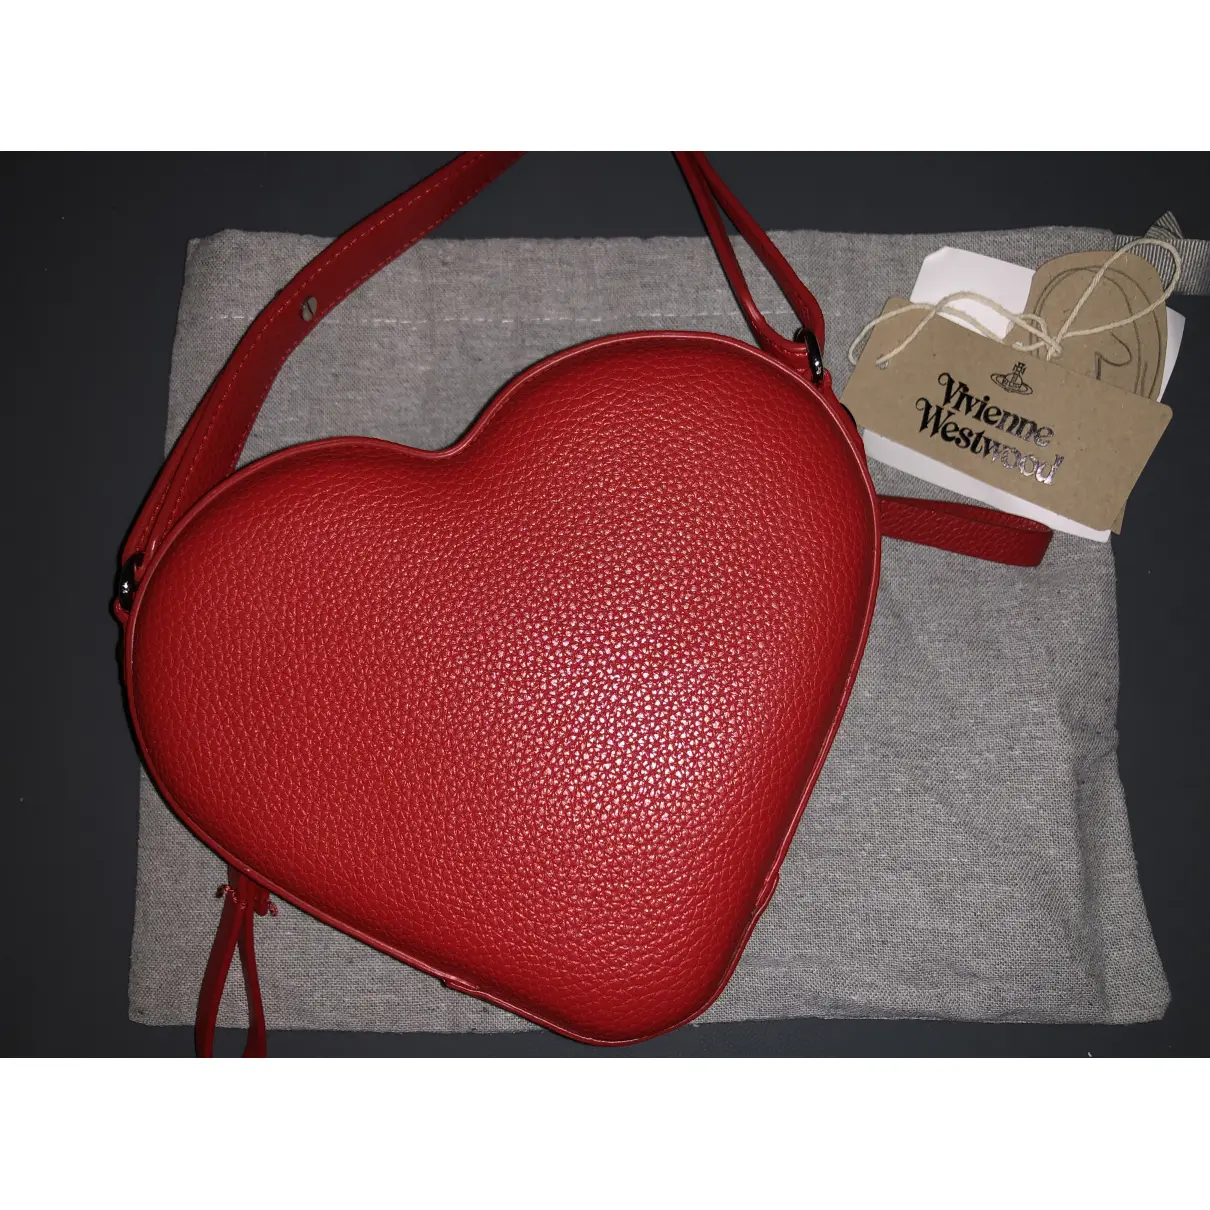 Buy Vivienne Westwood Vegan leather crossbody bag online